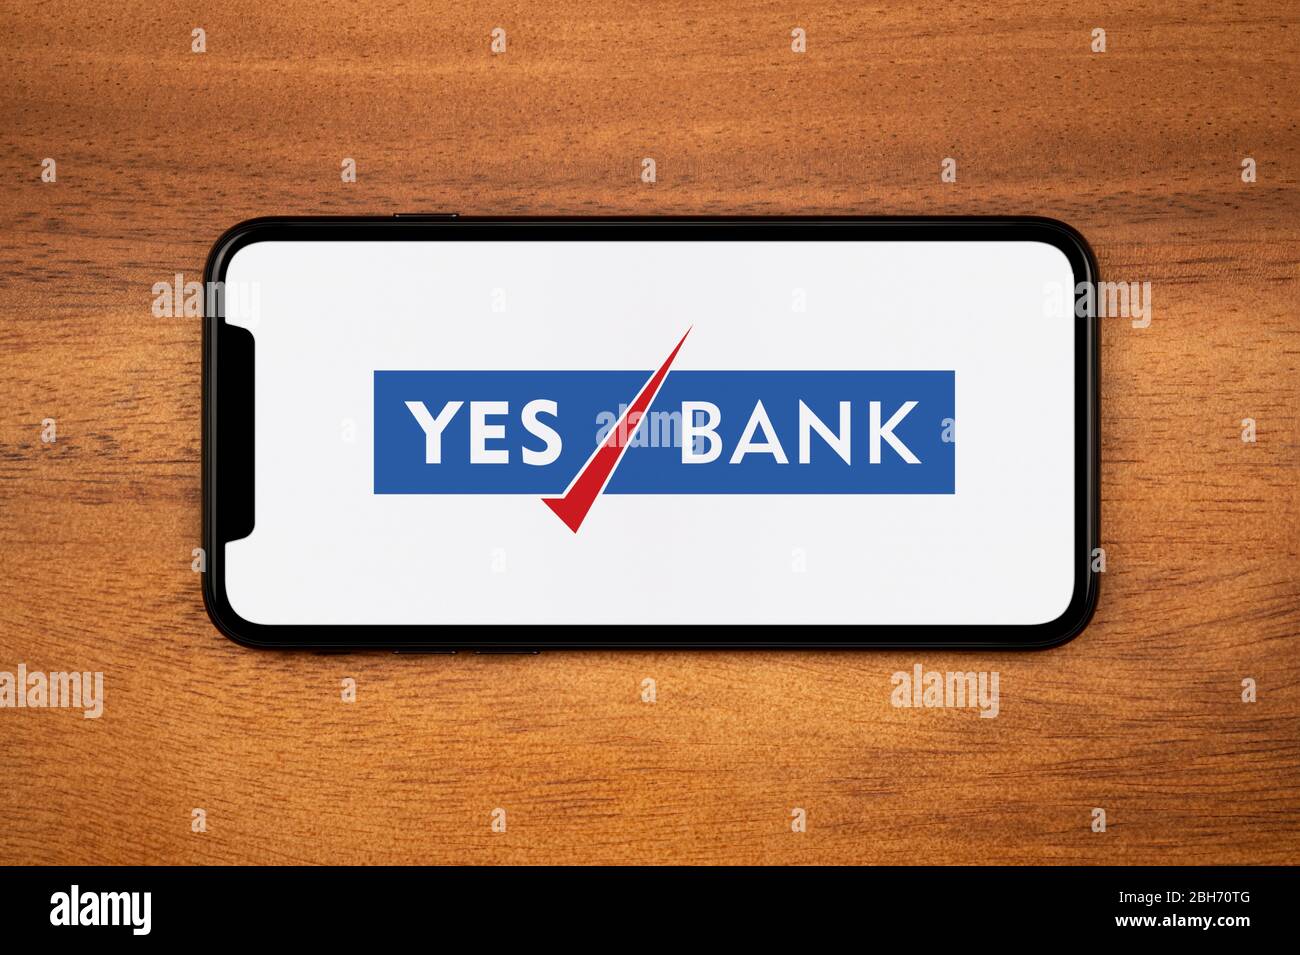 Un smartphone affichant le logo Yes Bank repose sur une table en bois ordinaire (usage éditorial uniquement). Banque D'Images